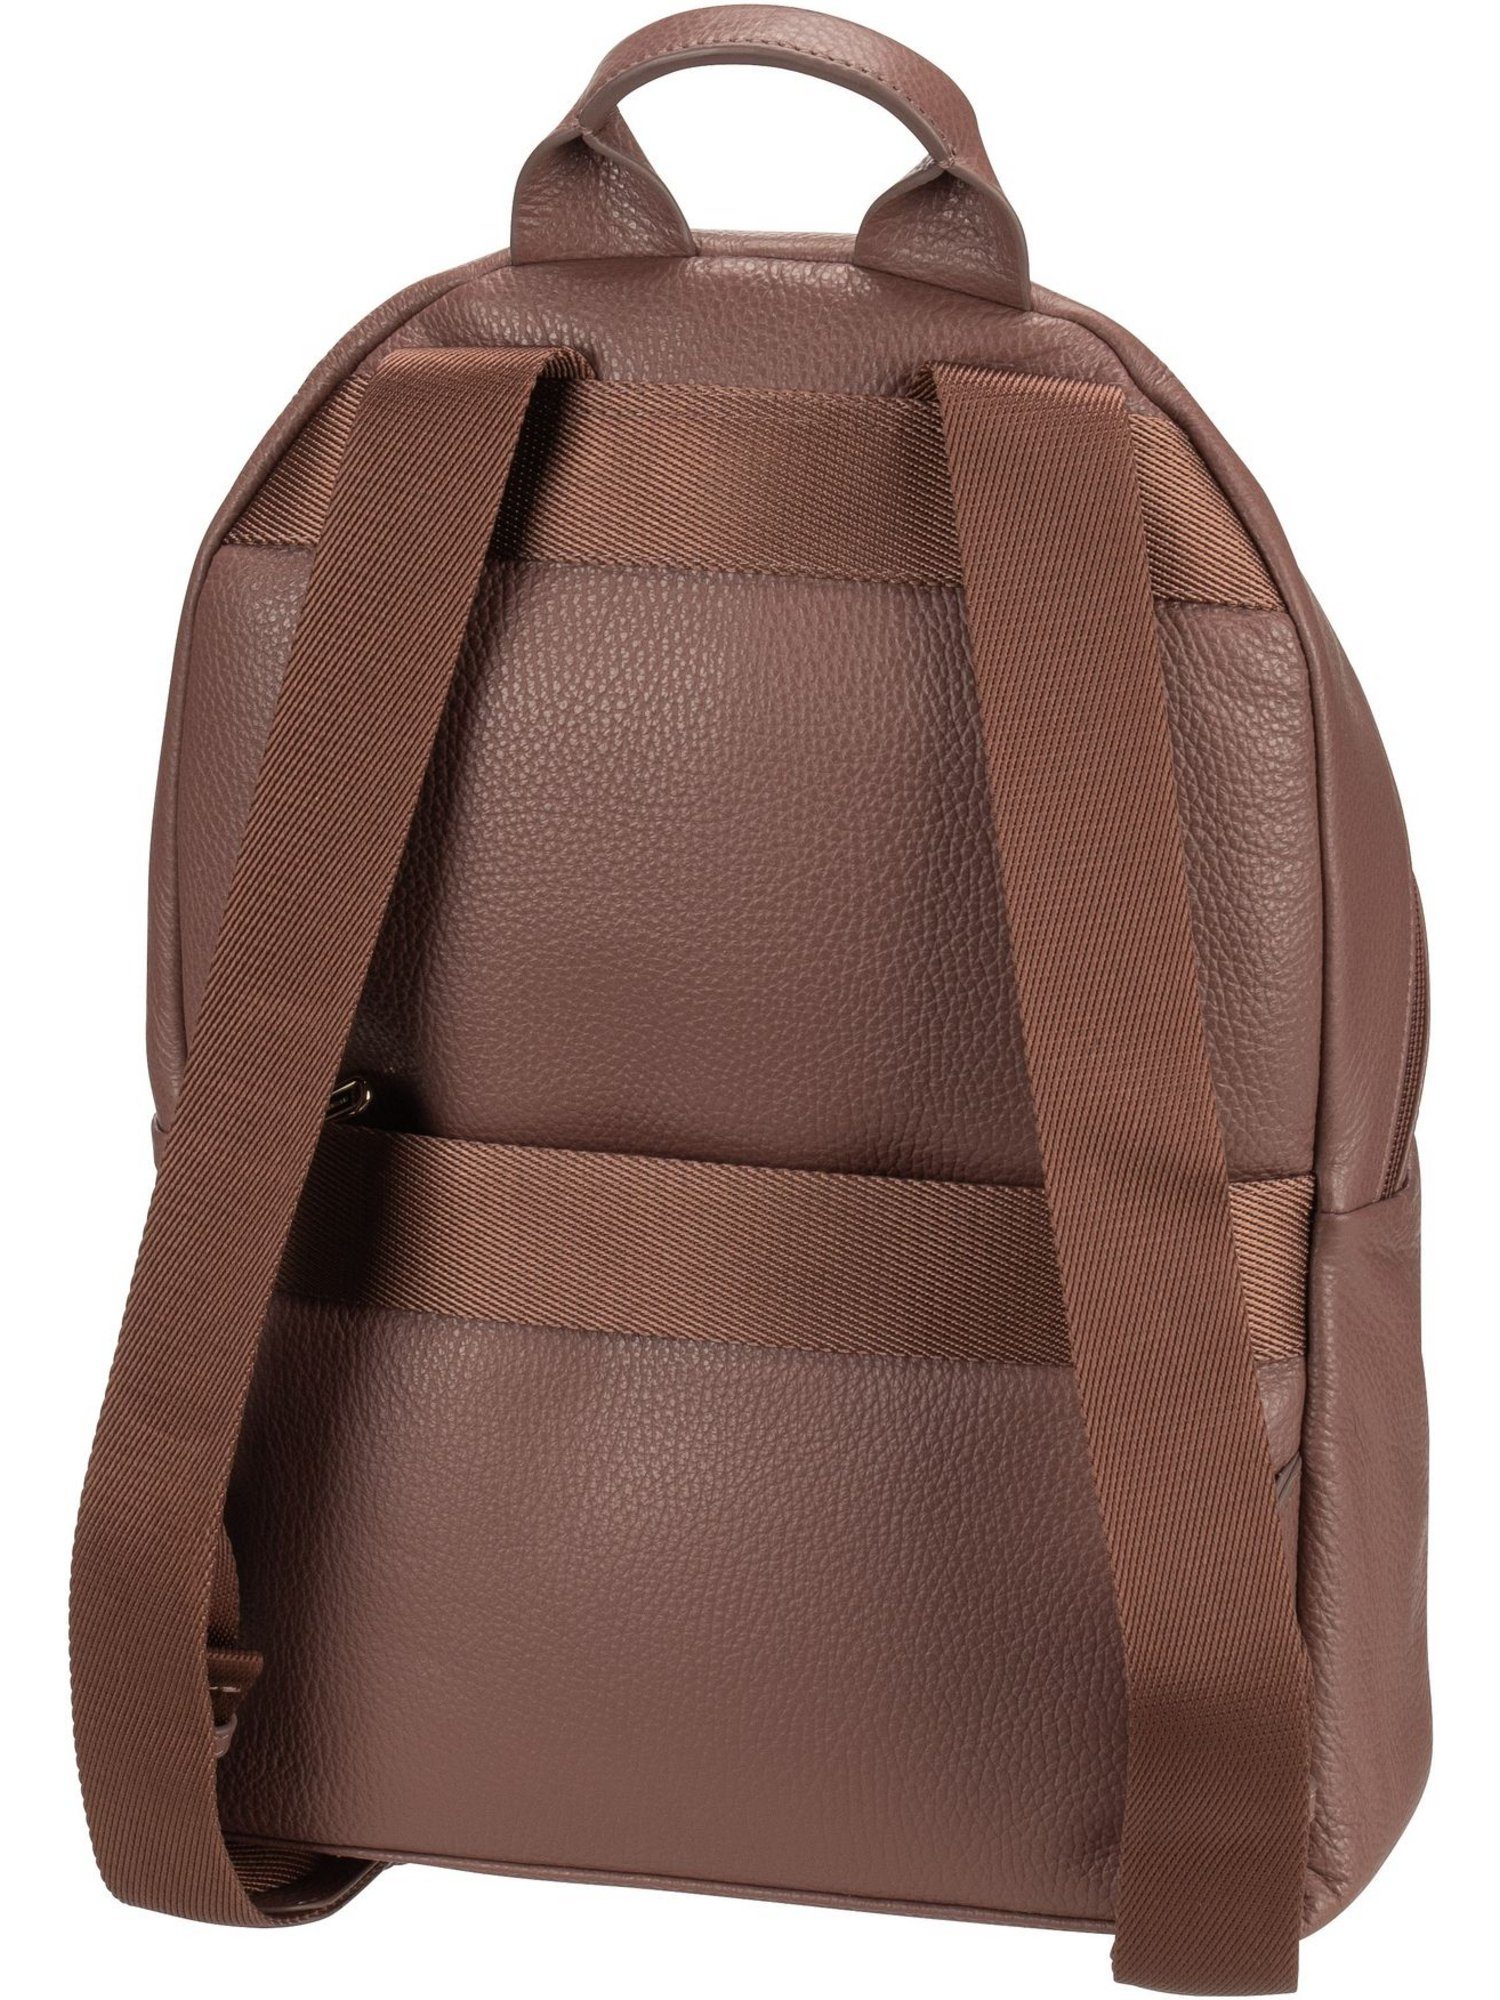 Mandarina Duck Rucksack Mellow Leather FZT35 Medium Balsamic Backpack